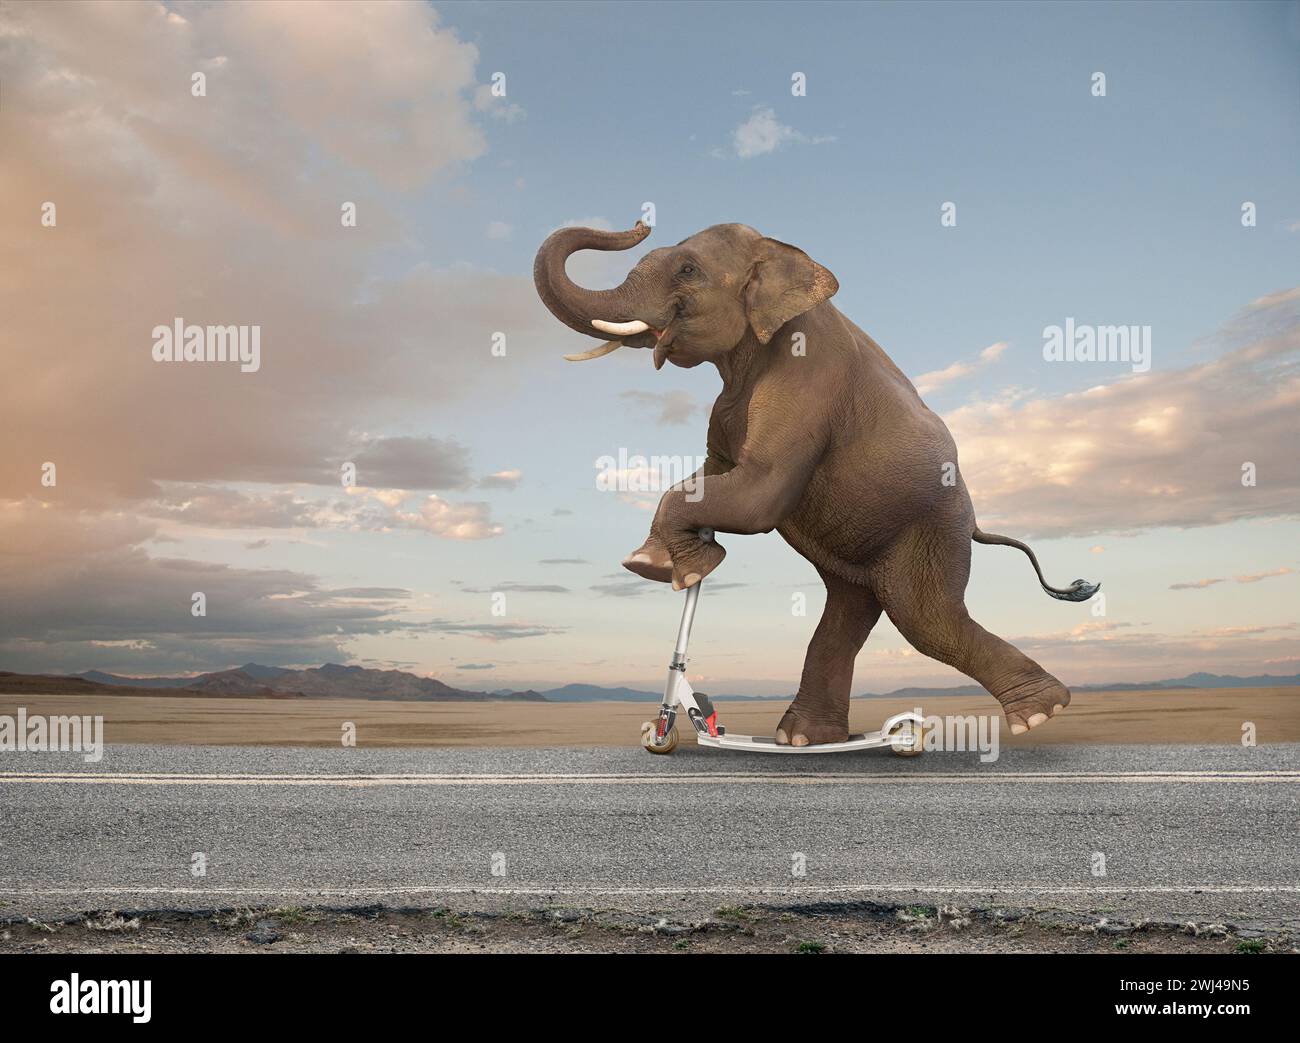 Un éléphant drôle court sur une route sur un scooter rasoir dans une image sur la vitesse inattendue, l'habileté et l'agilité. Banque D'Images